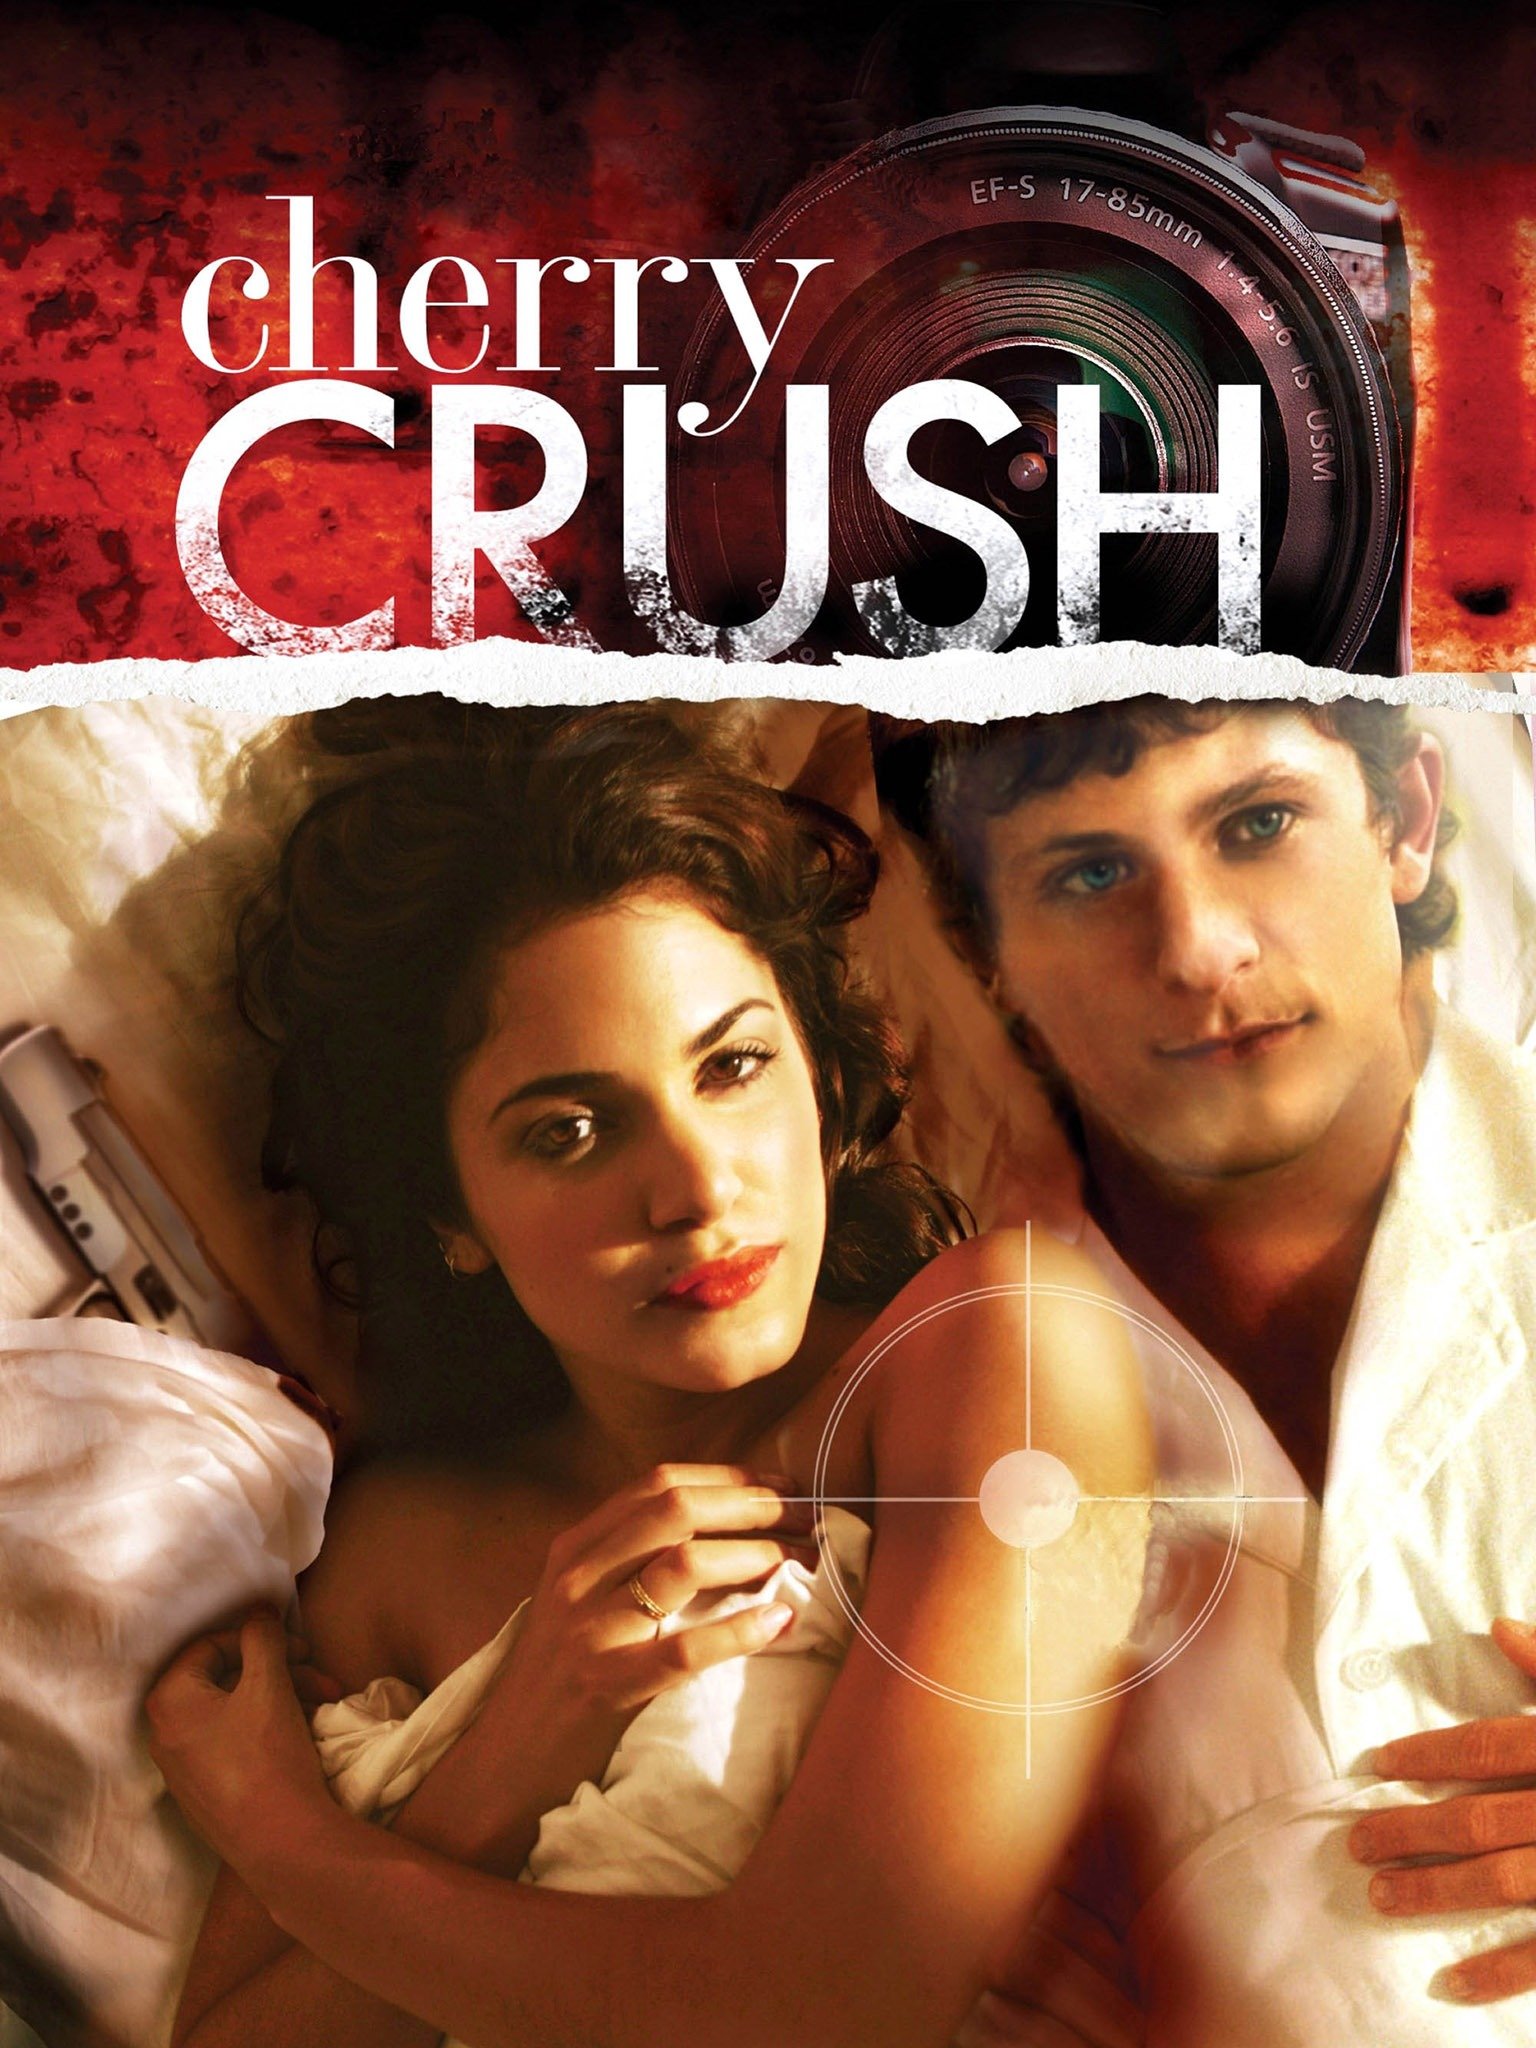 Cherry crush real name